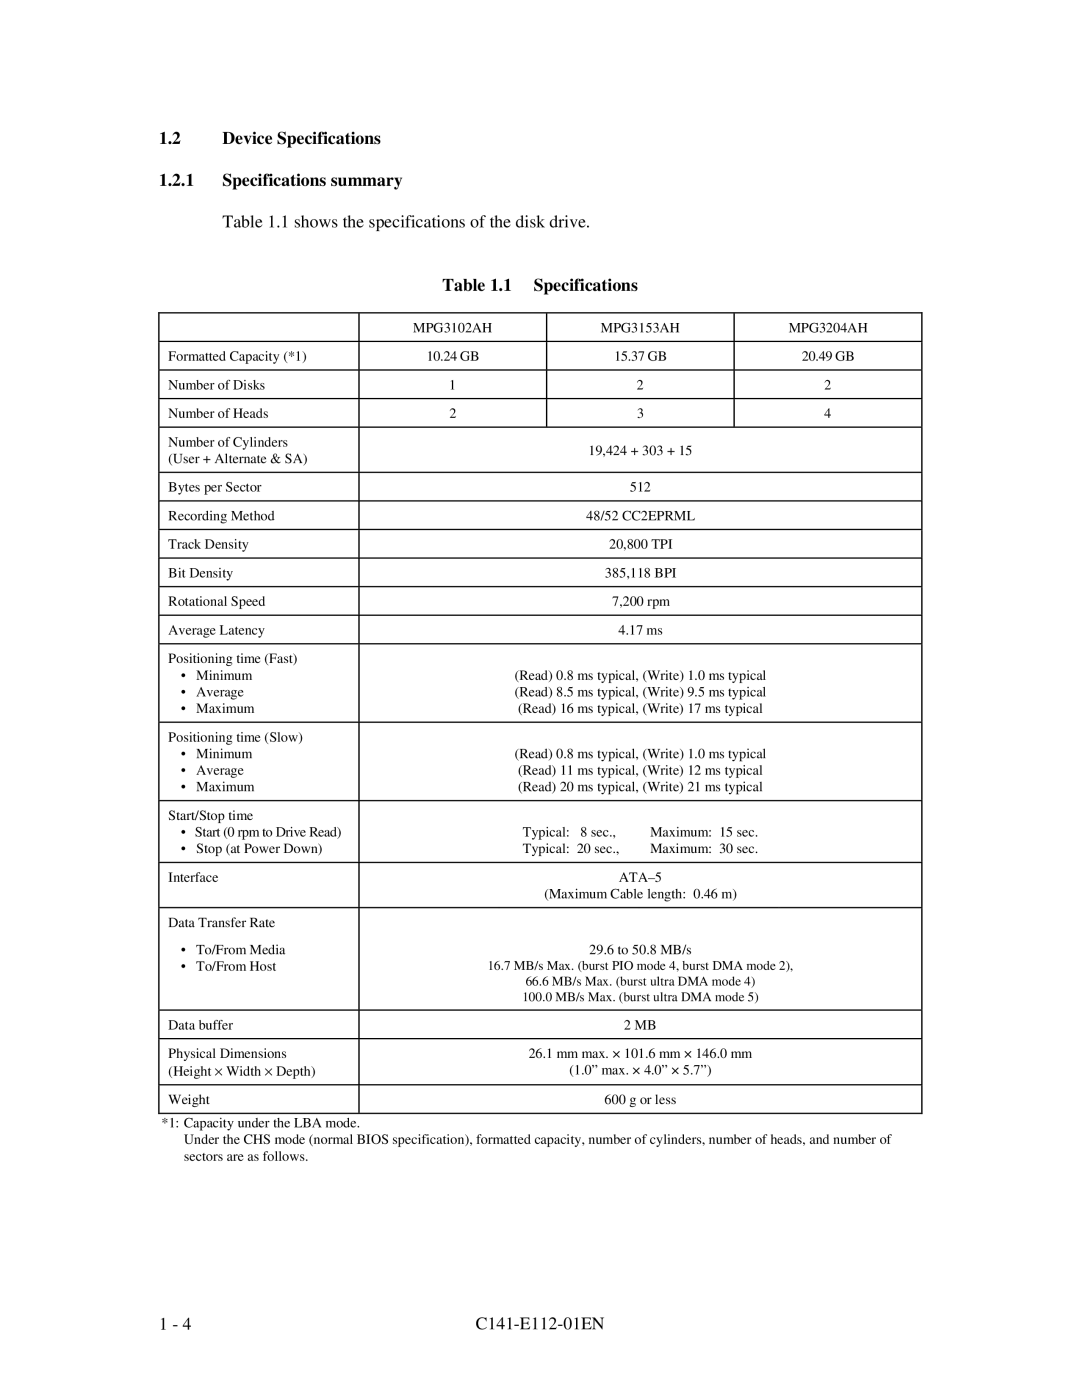 Fujitsu MPG3XXXAH manual Device Specifications 1.2.1 Specifications summary, ATA-5, 66.6 MB/s Max. burst ultra DMA mode 